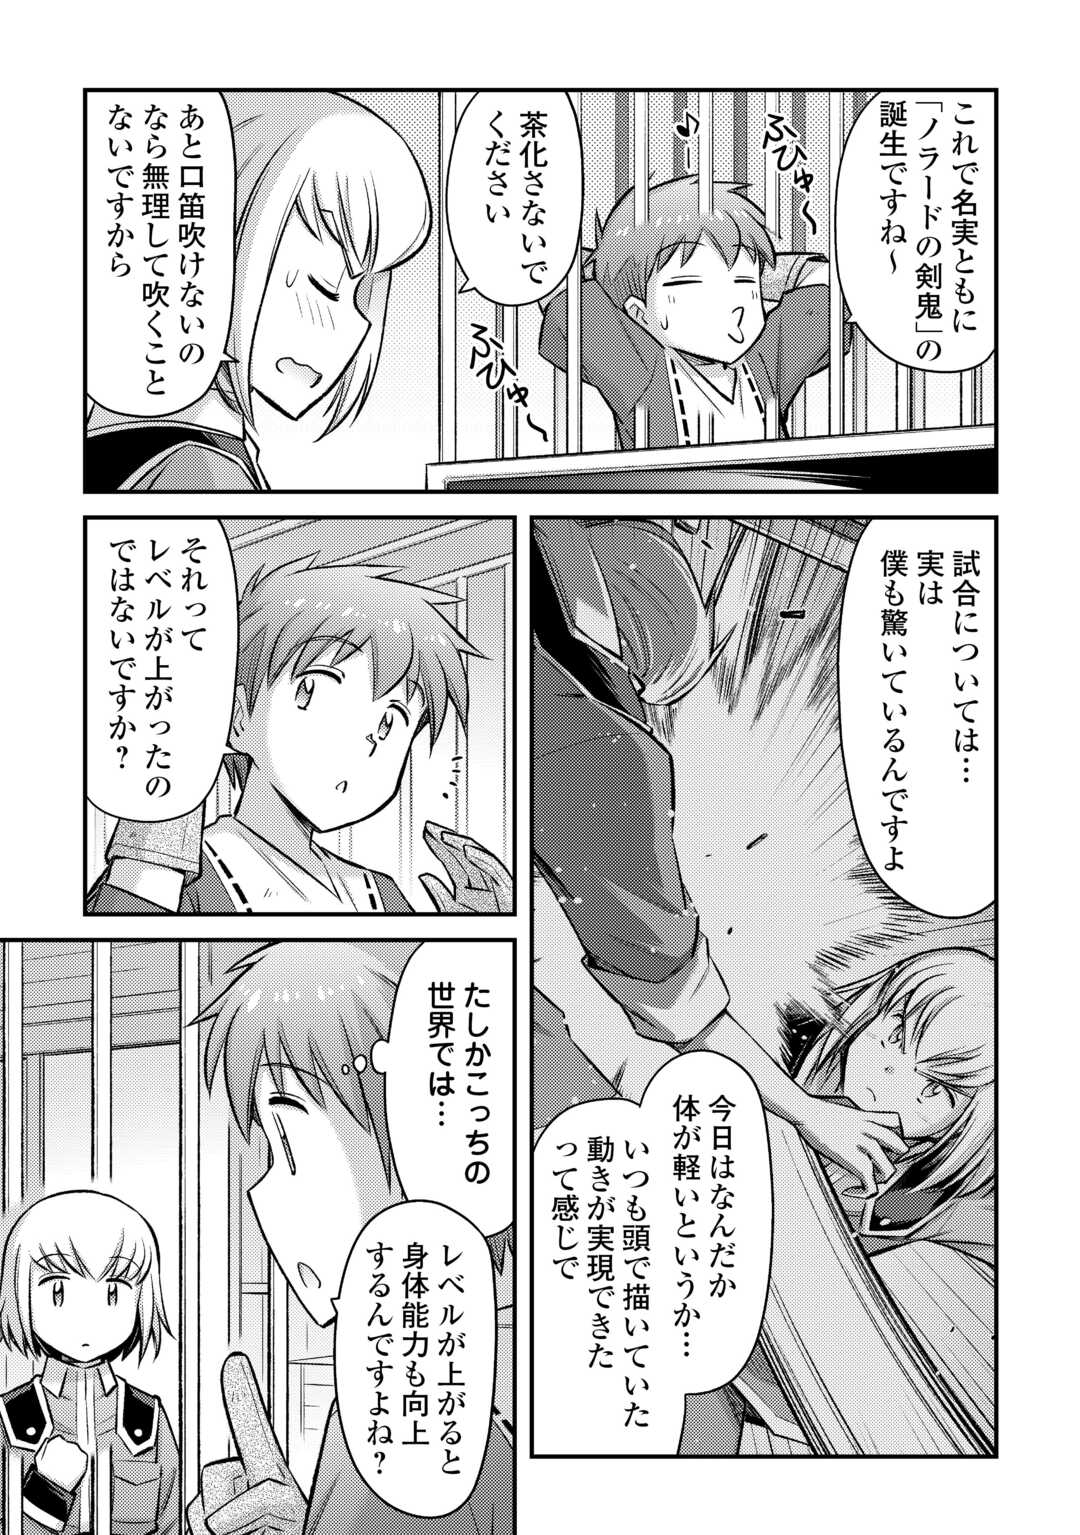 Makikomare Shoukan! Soshite Watashi wa “Kami” Deshita?? - Chapter 40 - Page 3